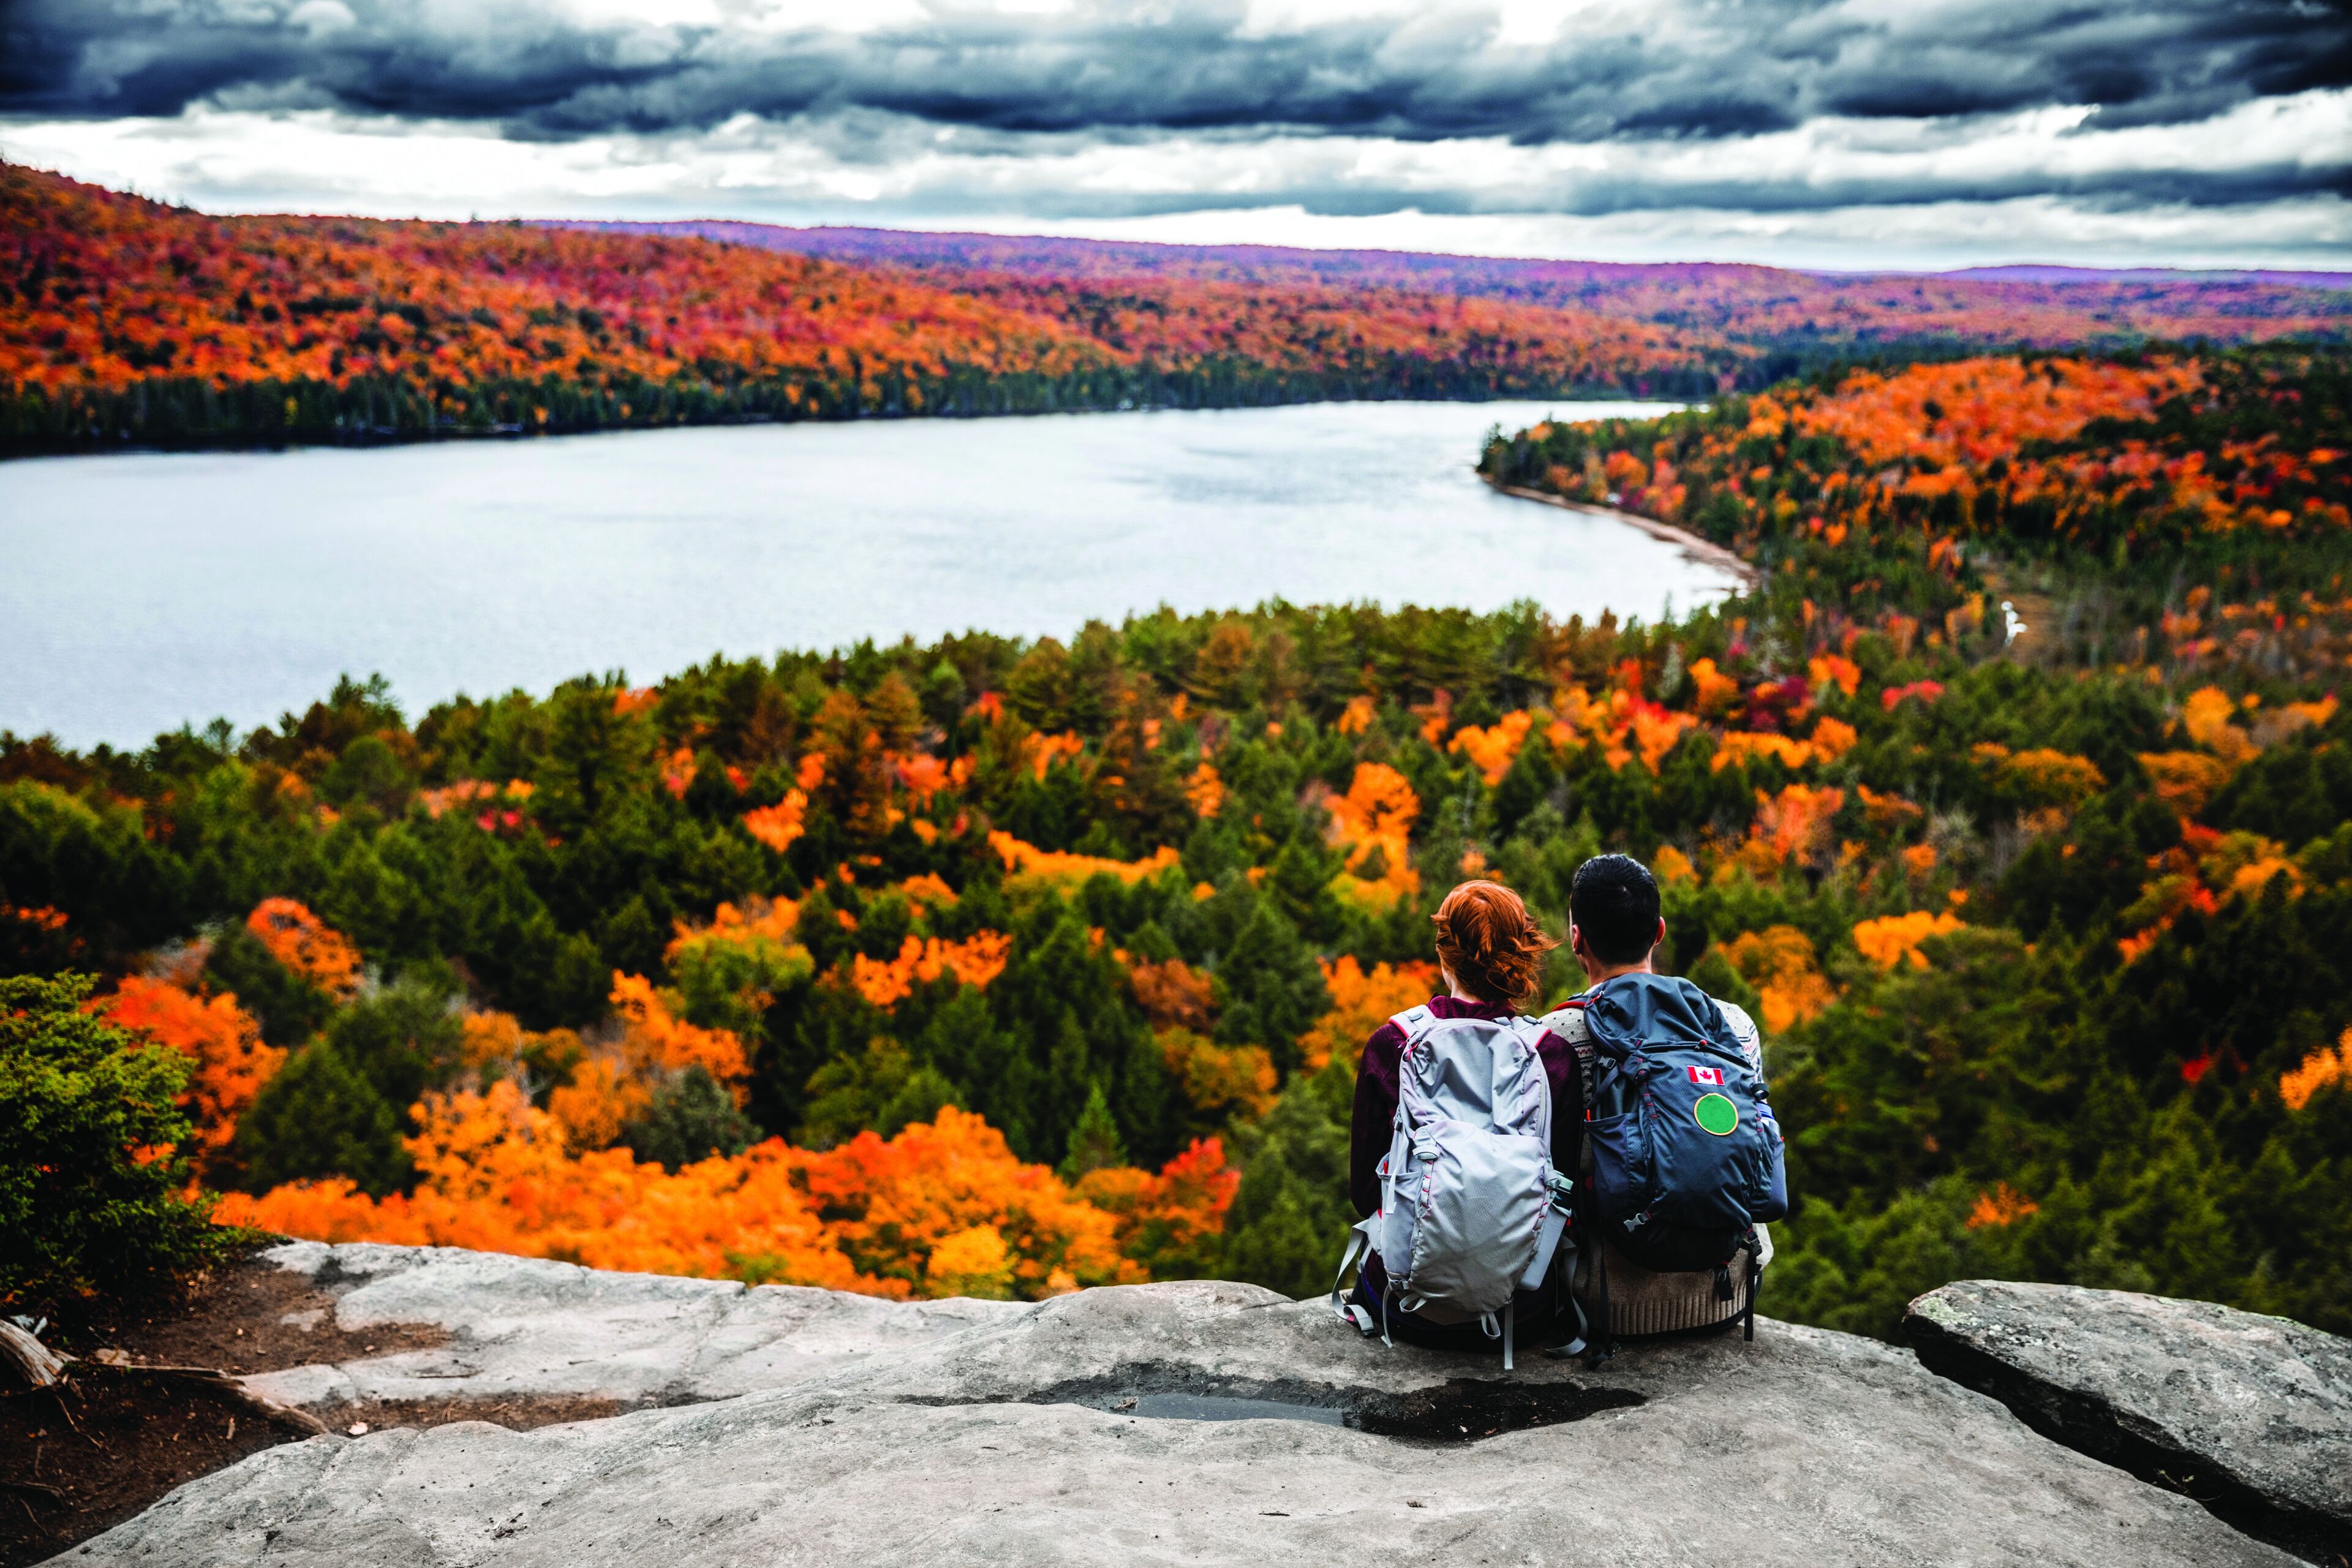 Dos excursionistas se sientan en un acantilado con vistas a un impresionante paisaje otoñal lleno de follaje ardiente junto a un lago sereno, capturando la esencia de la exploración otoñal.